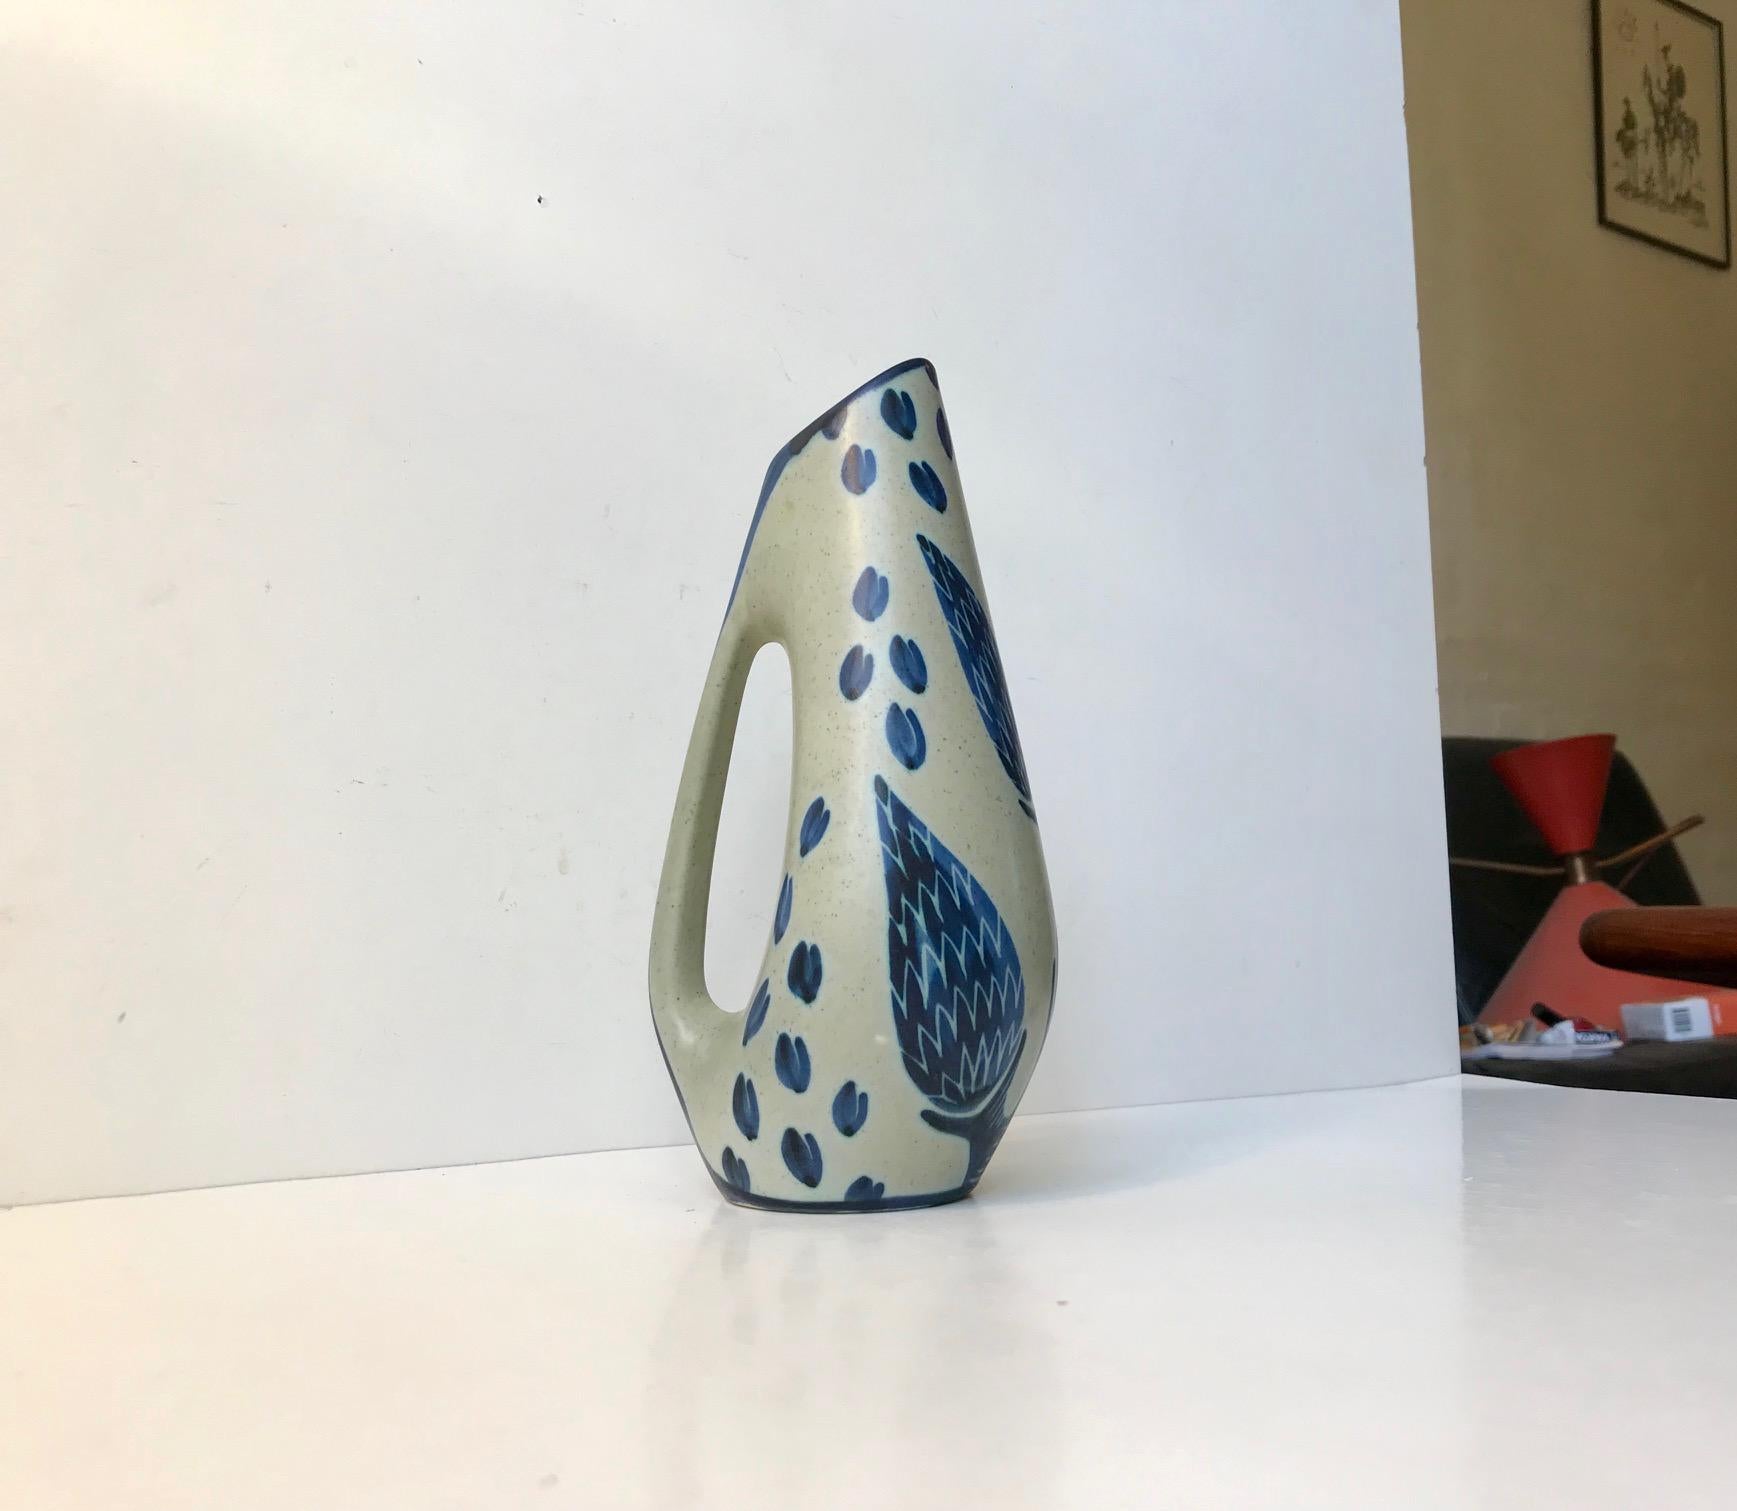 Mid-20th Century Danish Modernist Ceramic Jug Vase by Einar Johansen for Søholm, 1960s